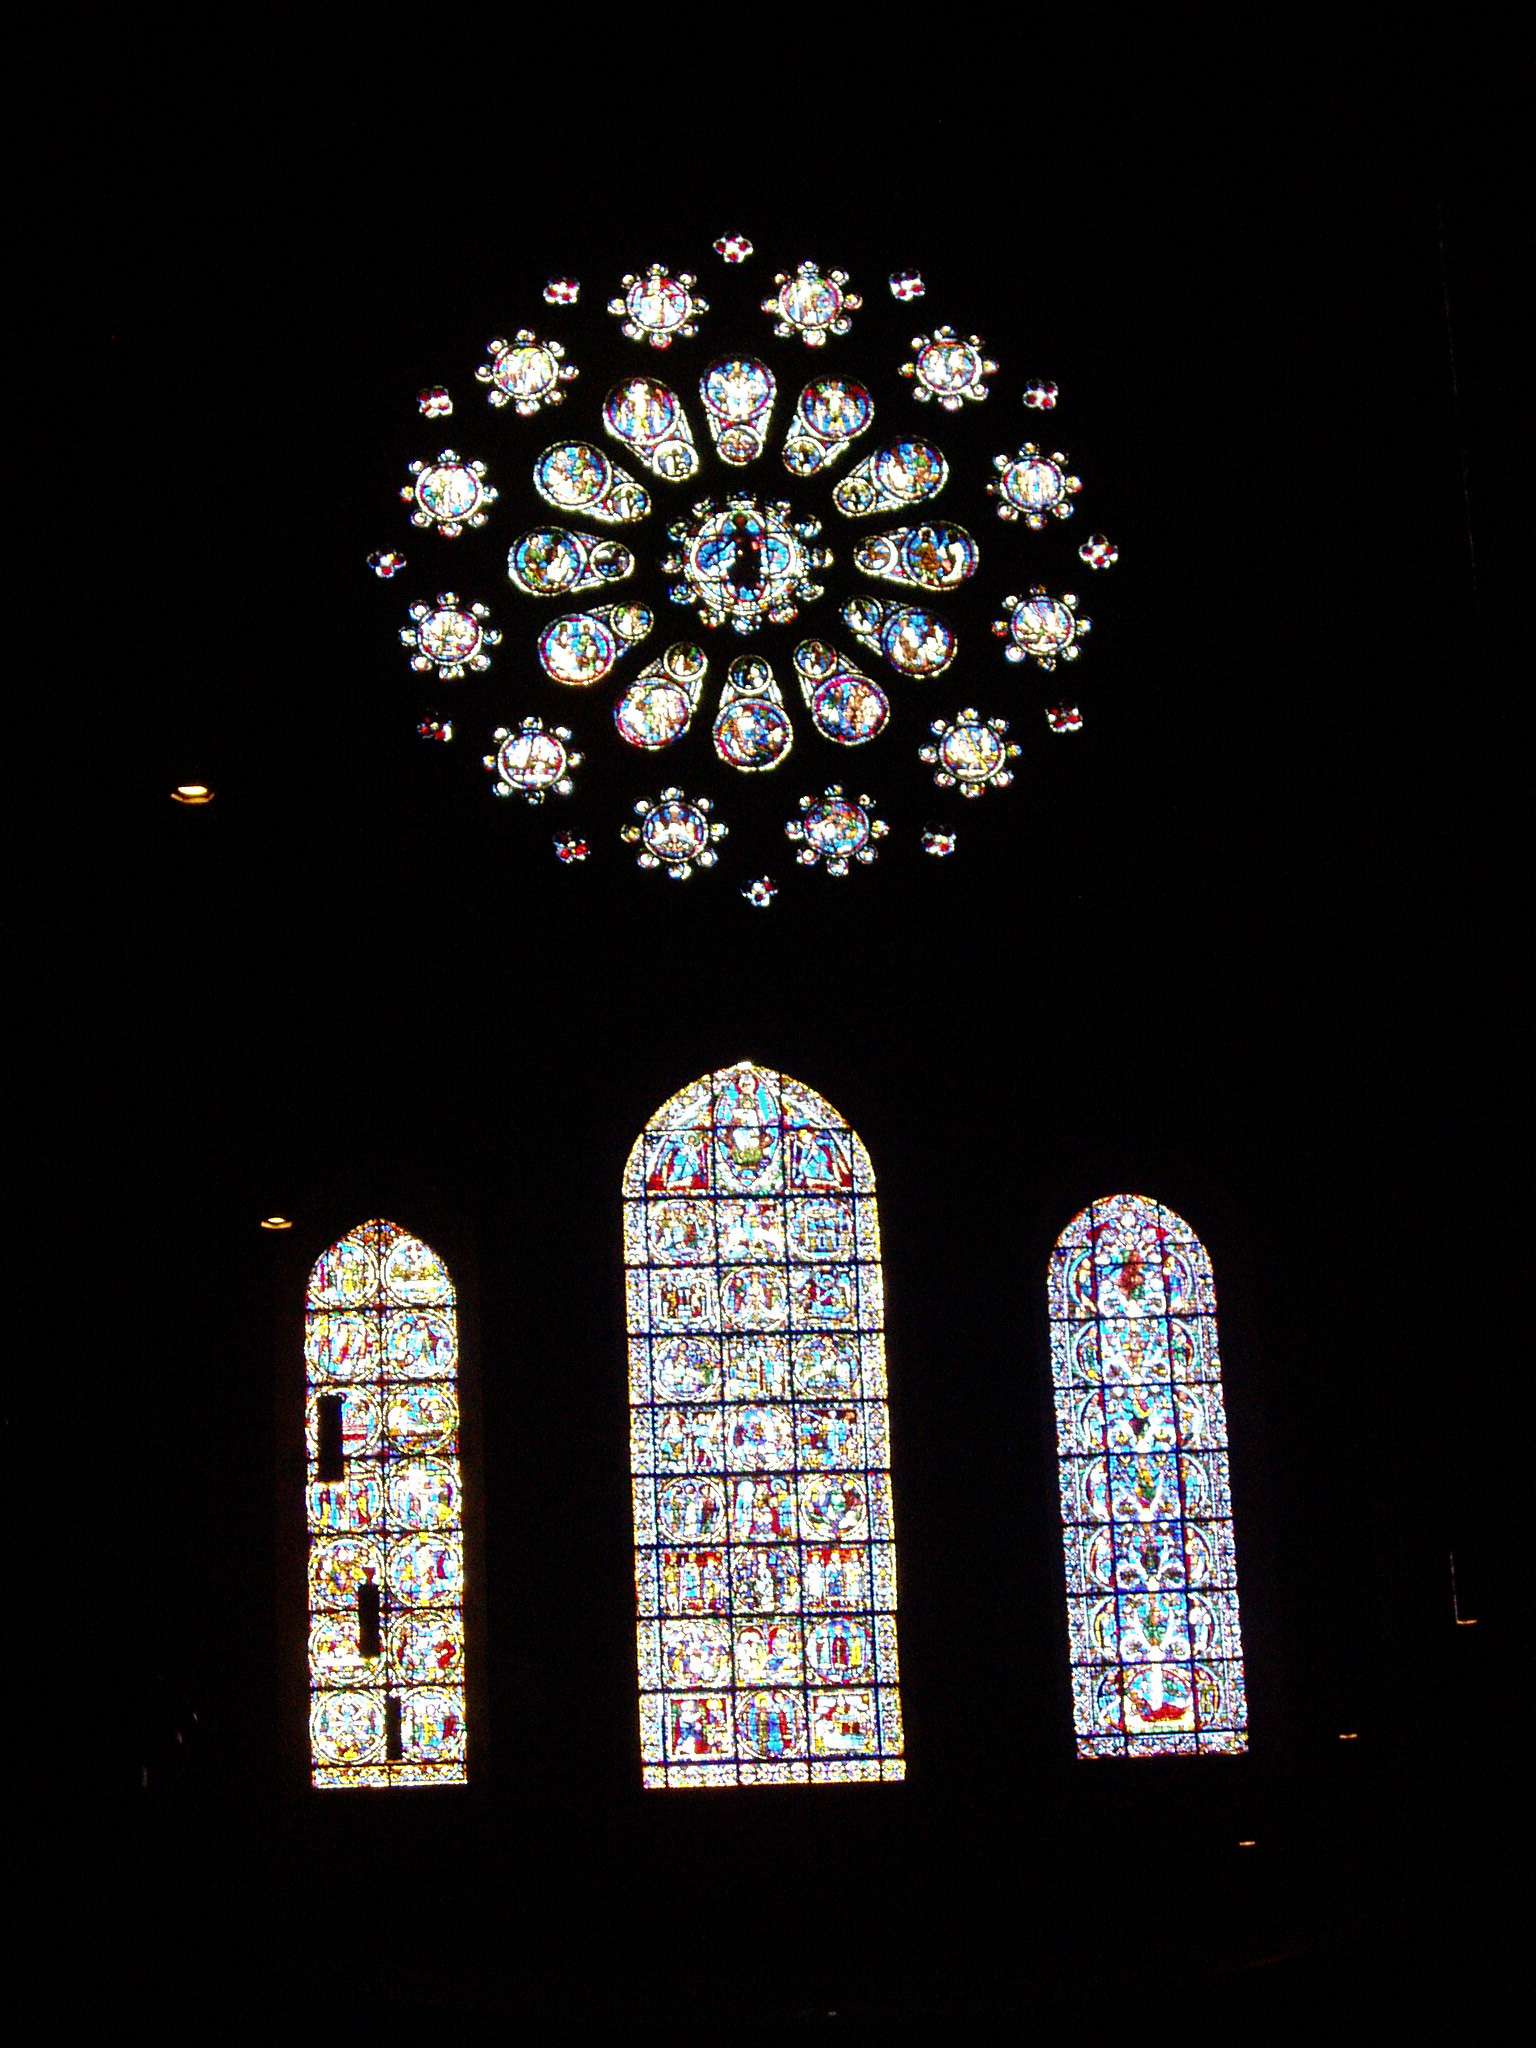 Las vidrieras de la catedral de Chartres - Chartres: Arte, espiritualidad y esoterismo. (2)